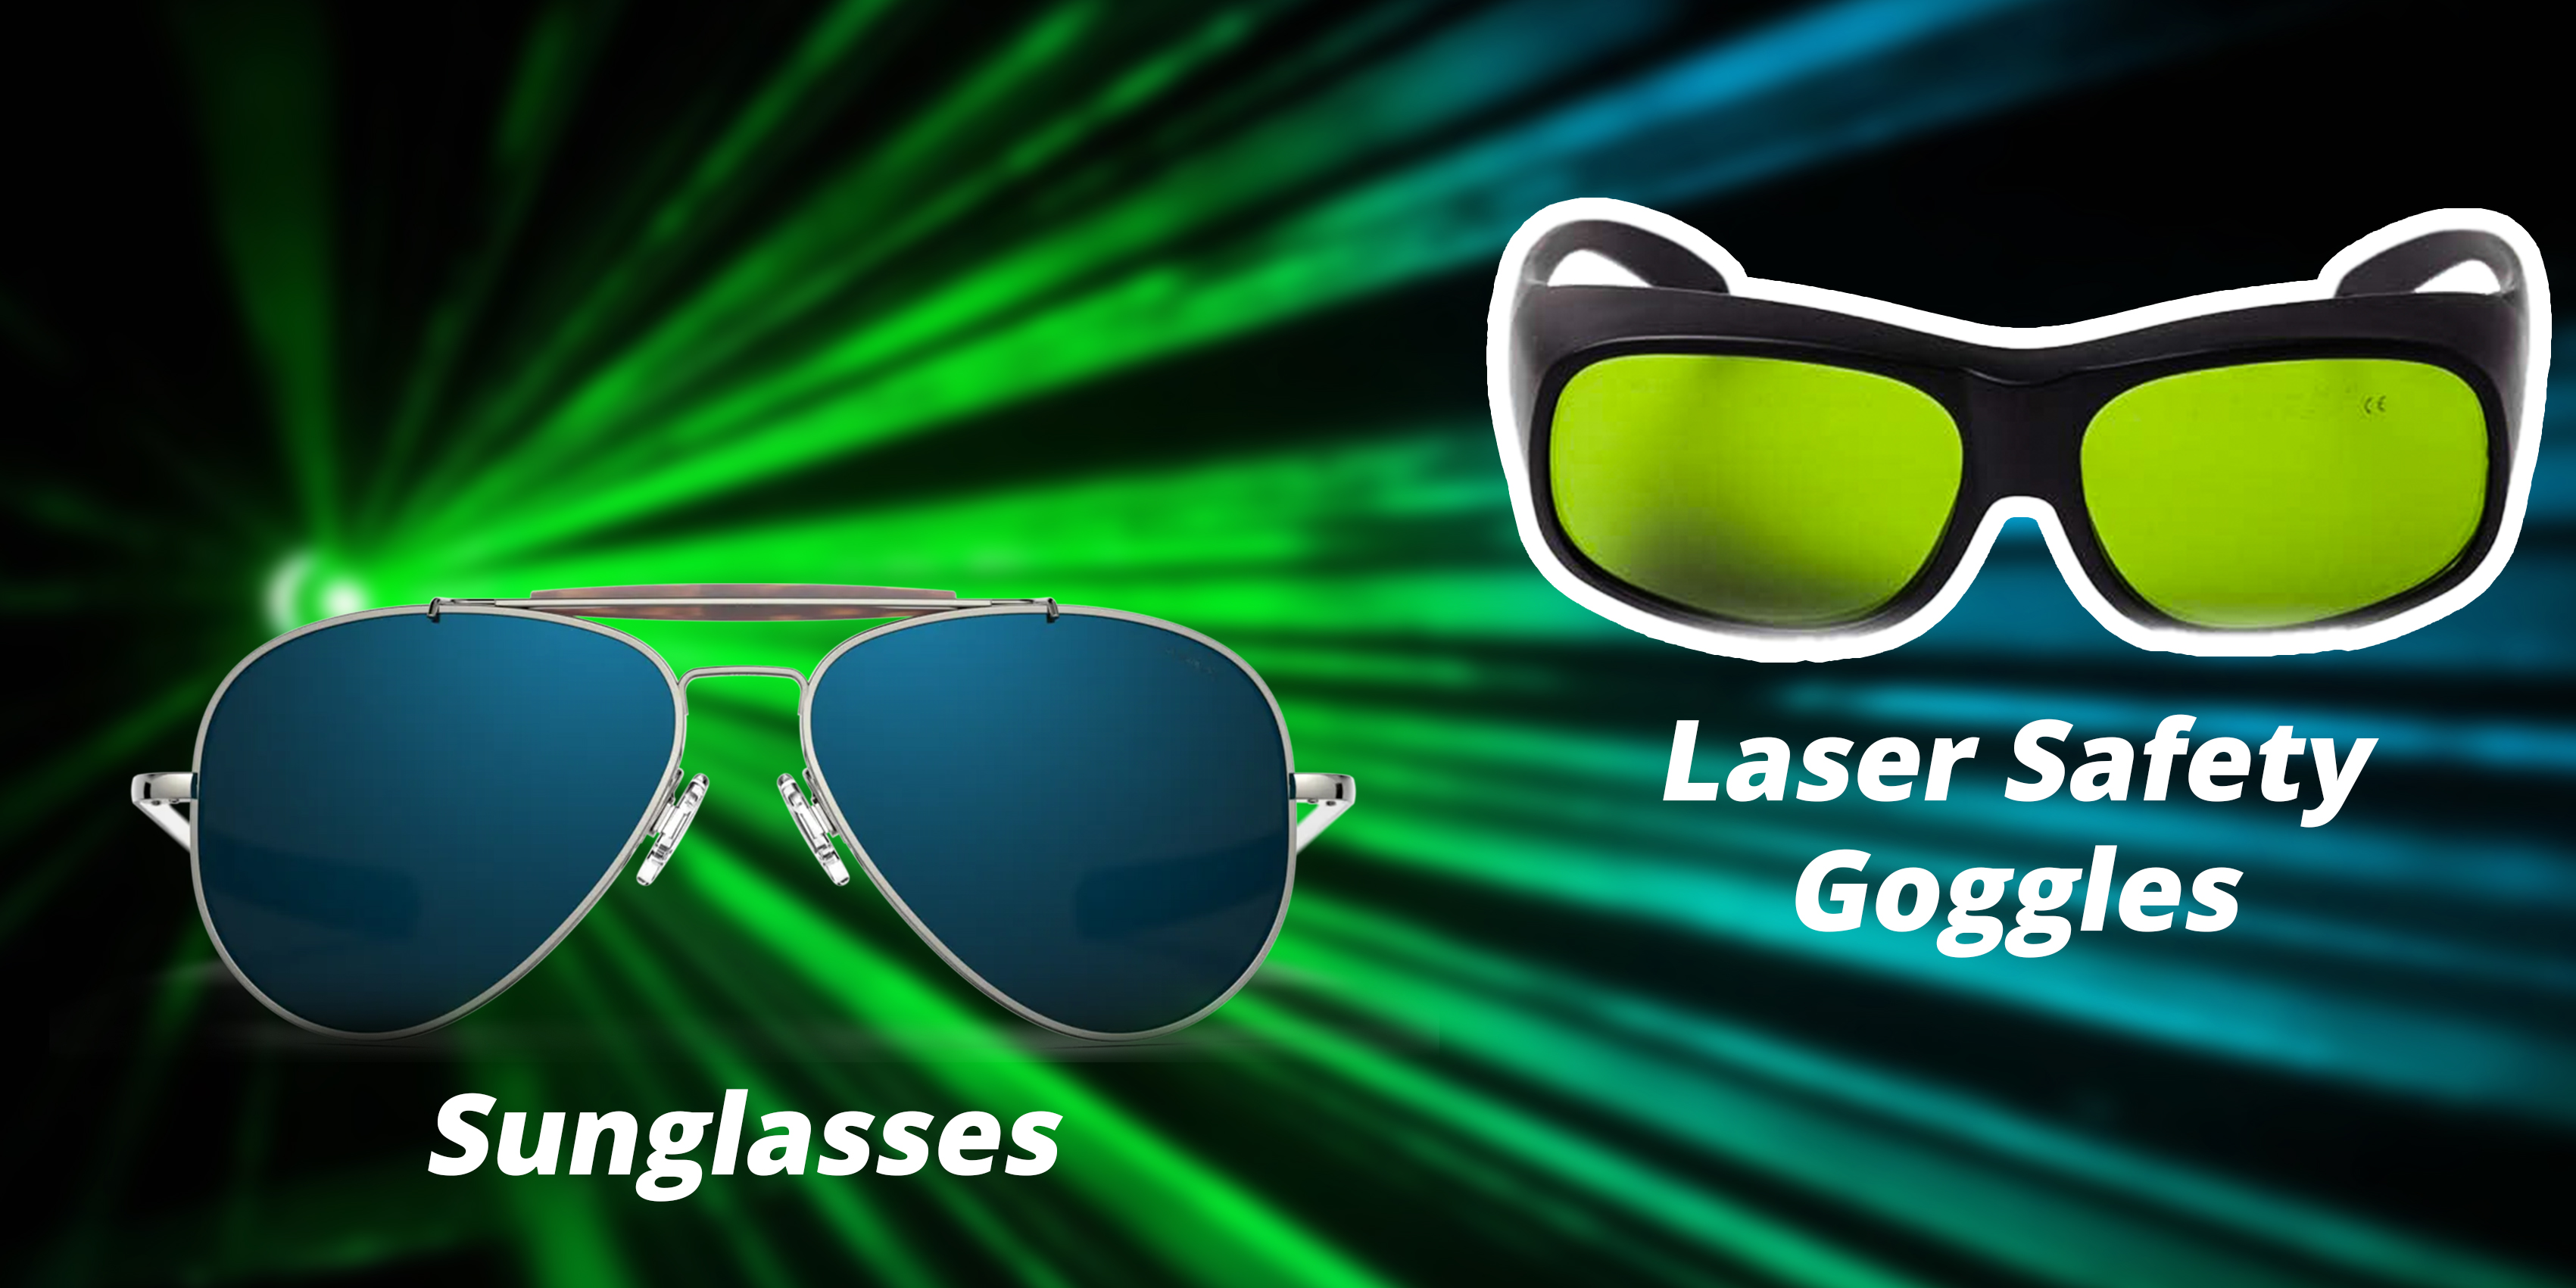 Óculos de sol ou óculos para laser: qual escolher para proteção contra laser?